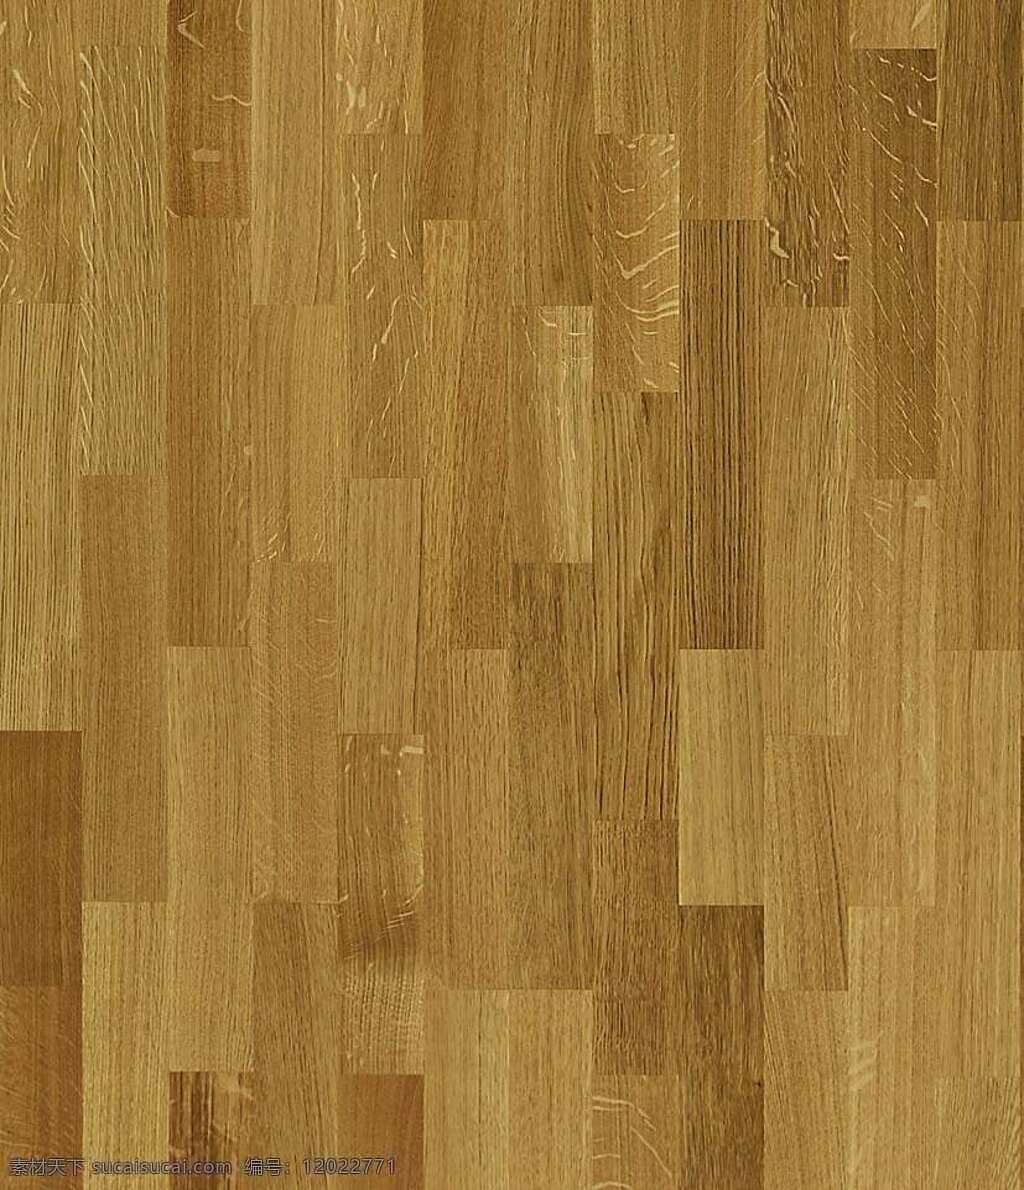 木地板 贴图 地板 木地板贴图 木地板效果图 装修效果图 木地板材质 地板设计素材 装饰素材 室内装饰用图